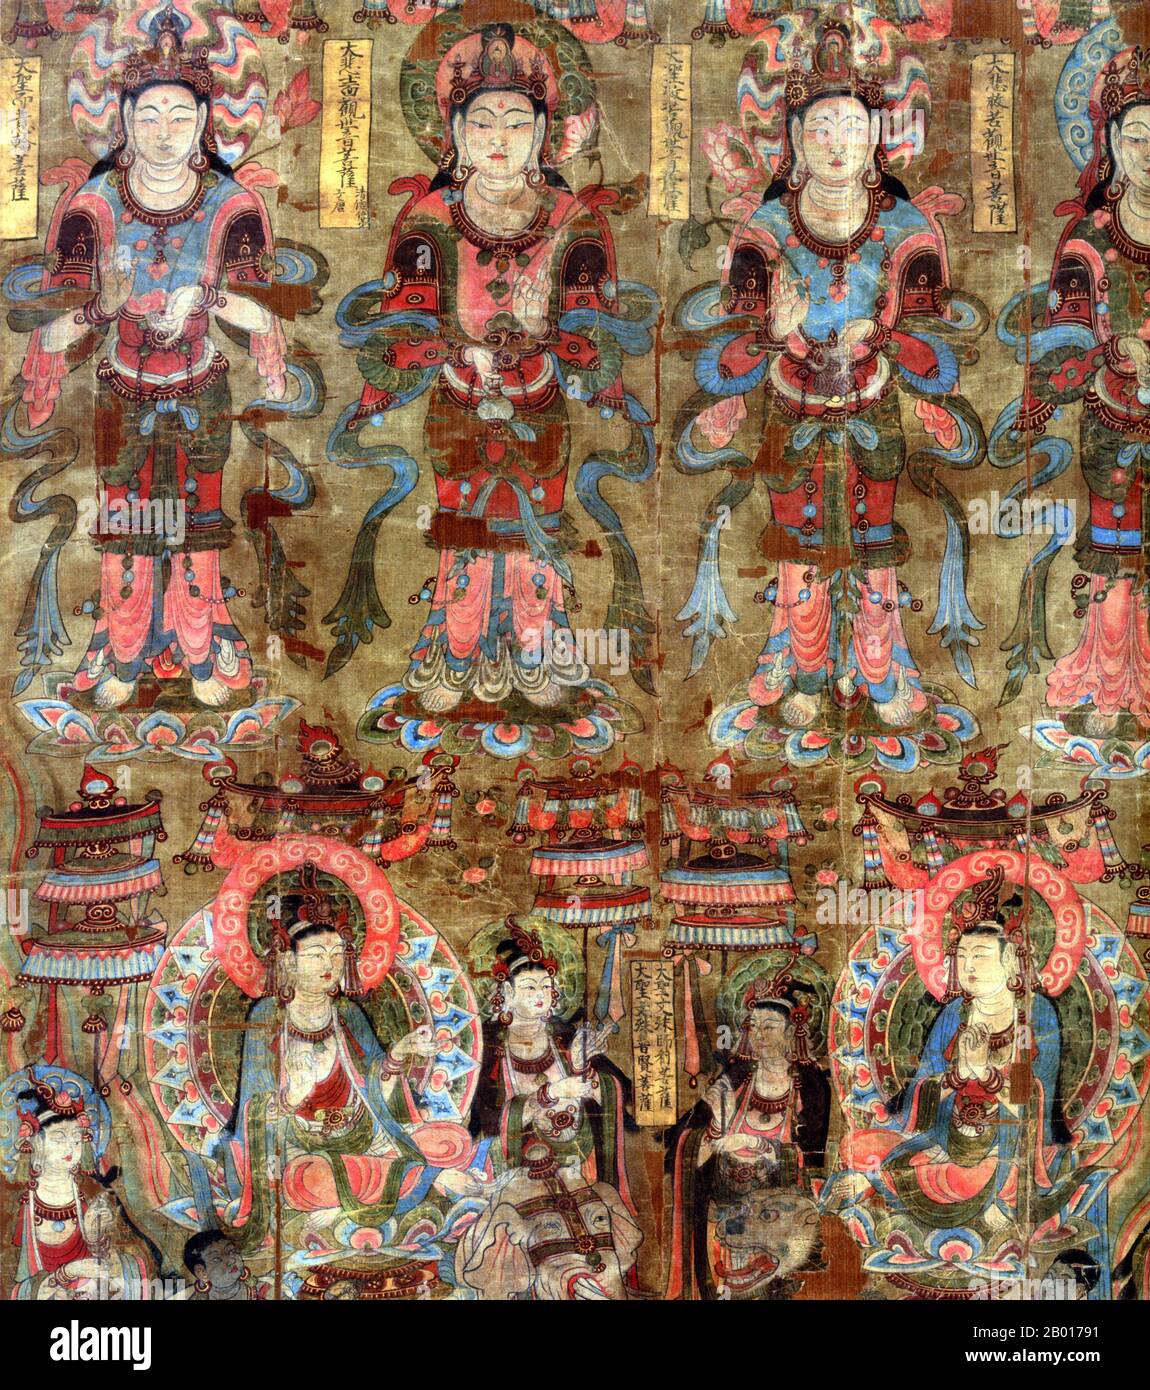 China: Vier Manifestationen des Bodhisattva Avalokitesvara oberhalb von Samantabhadra und Manjusri. Seidenmalerei, Mogao-Höhlen, Dunhuang, 864 u.Z. Avalokiteśvara (Sanskrit: 'Herr, der nach unten schaut') ist ein Bodhisattva, der das Mitgefühl aller Buddhas verkörpert. Er ist einer der am meisten verehrten Bodhisattvas im Mainstream-Mahayana-Buddhismus. Der chinesische Name für Avalokitasvara ist Guānshyīn (Guanyin, Göttin der Barmherzigkeit) und wird allgemein als weiblich dargestellt. Mañjuśrī ist ein Bodhisattva, der im Mahāyāna Buddhismus mit transzendenter Weisheit (Sanskrit. prajñā) assoziiert ist. Stockfoto